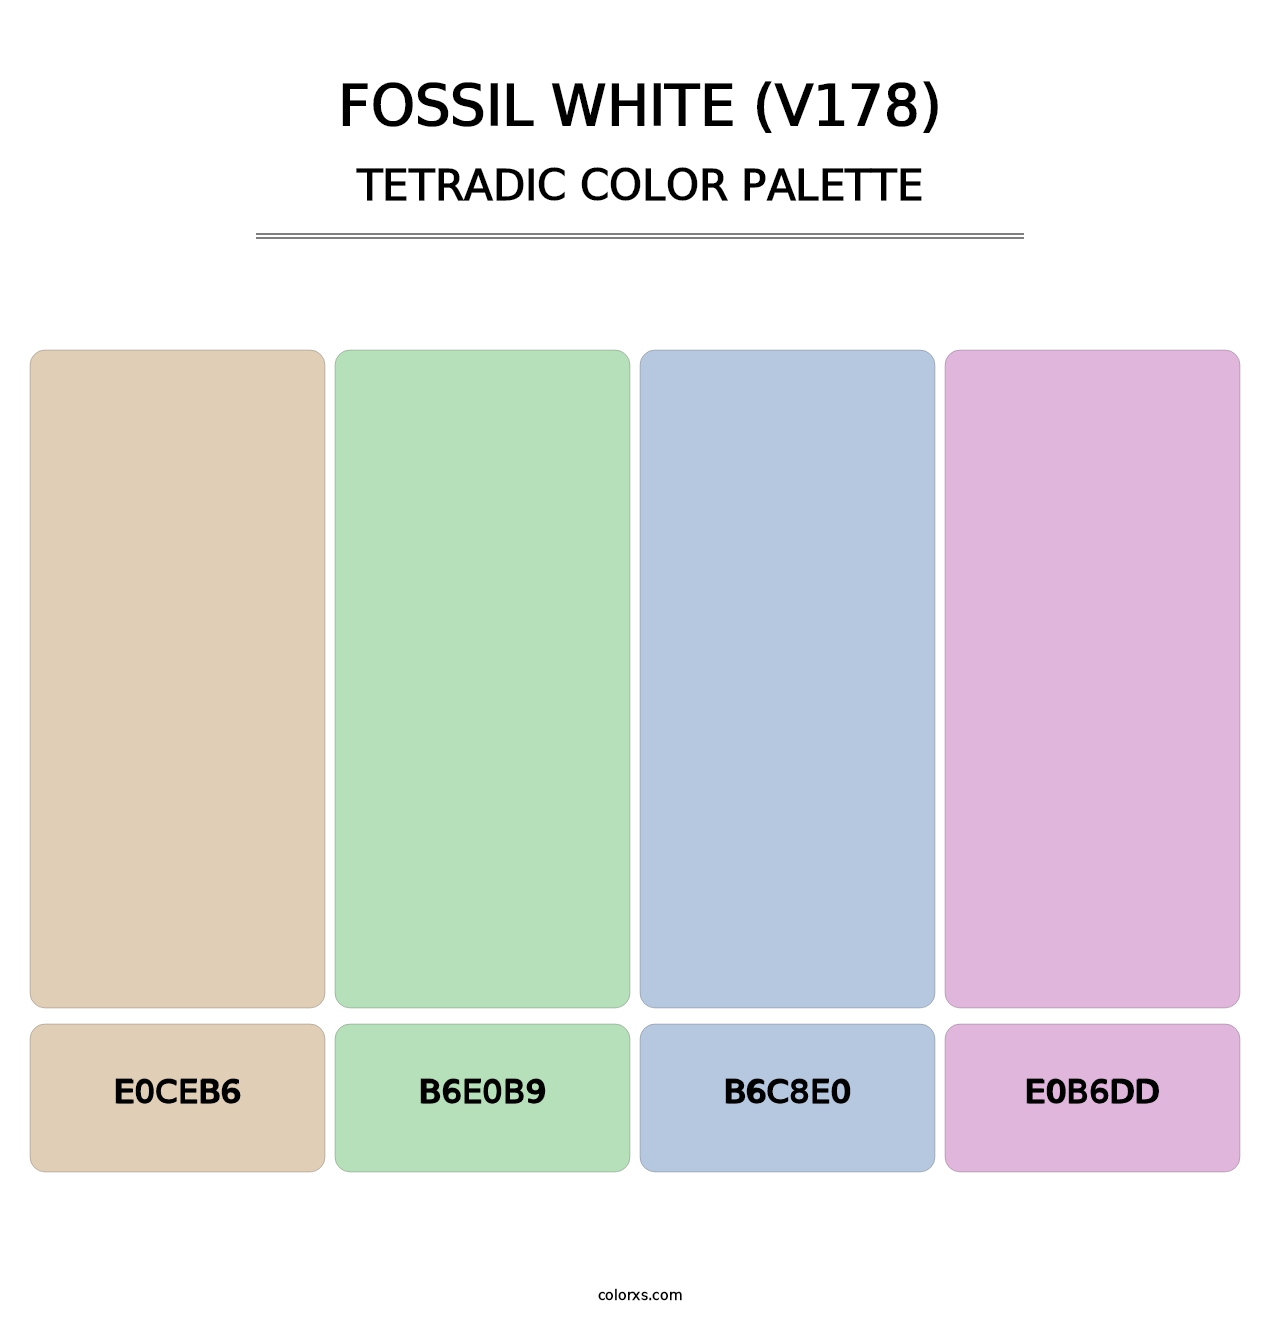 Fossil White (V178) - Tetradic Color Palette